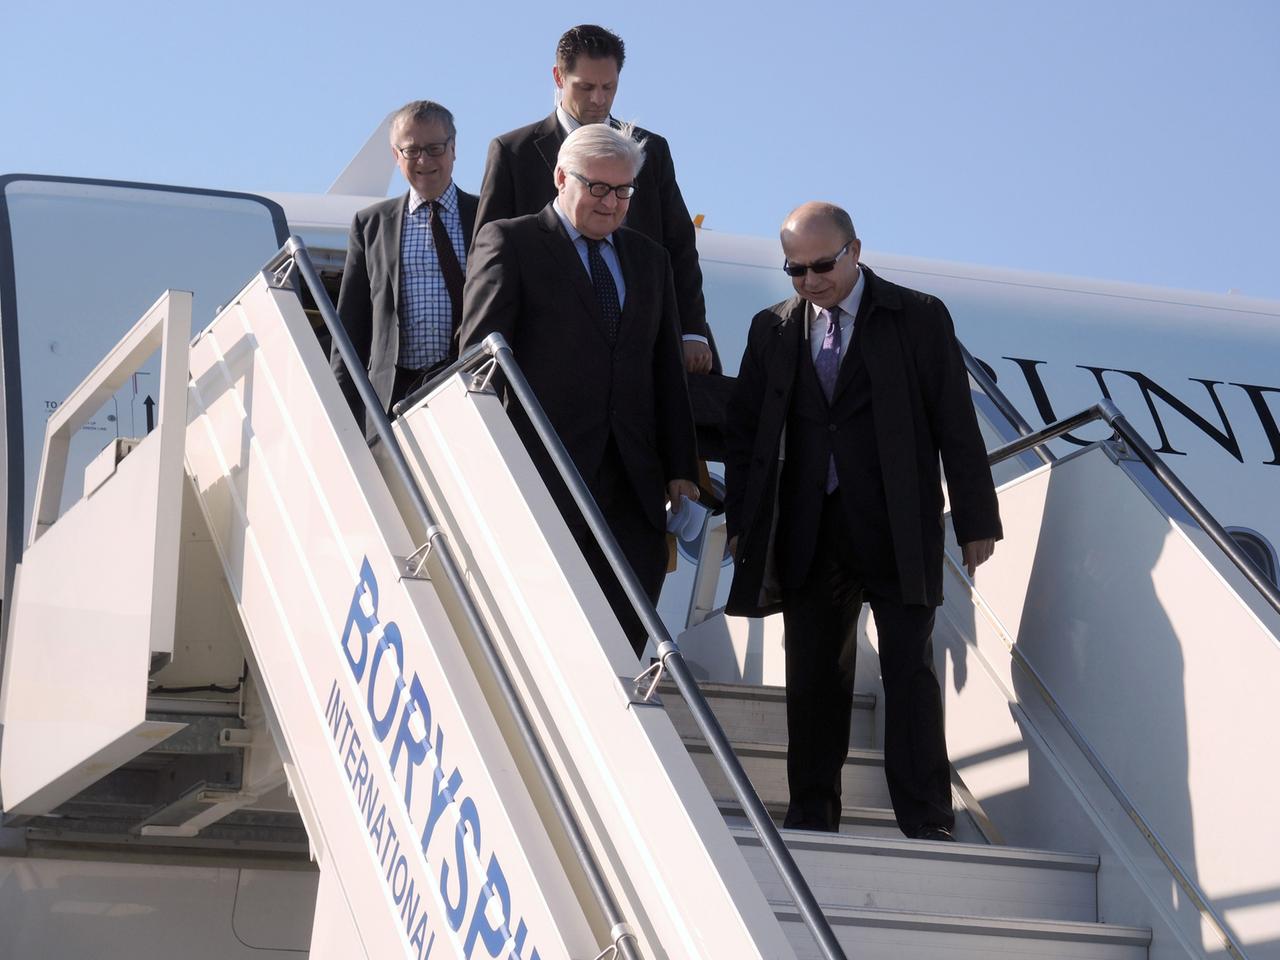 Außenminister Frank-Walter Steinmeier (SPD) kommt am 22.03.2014 auf dem Flughafen Boryspil in Kiew an und geht die Treppe vor seinem Flugzeug herunter.